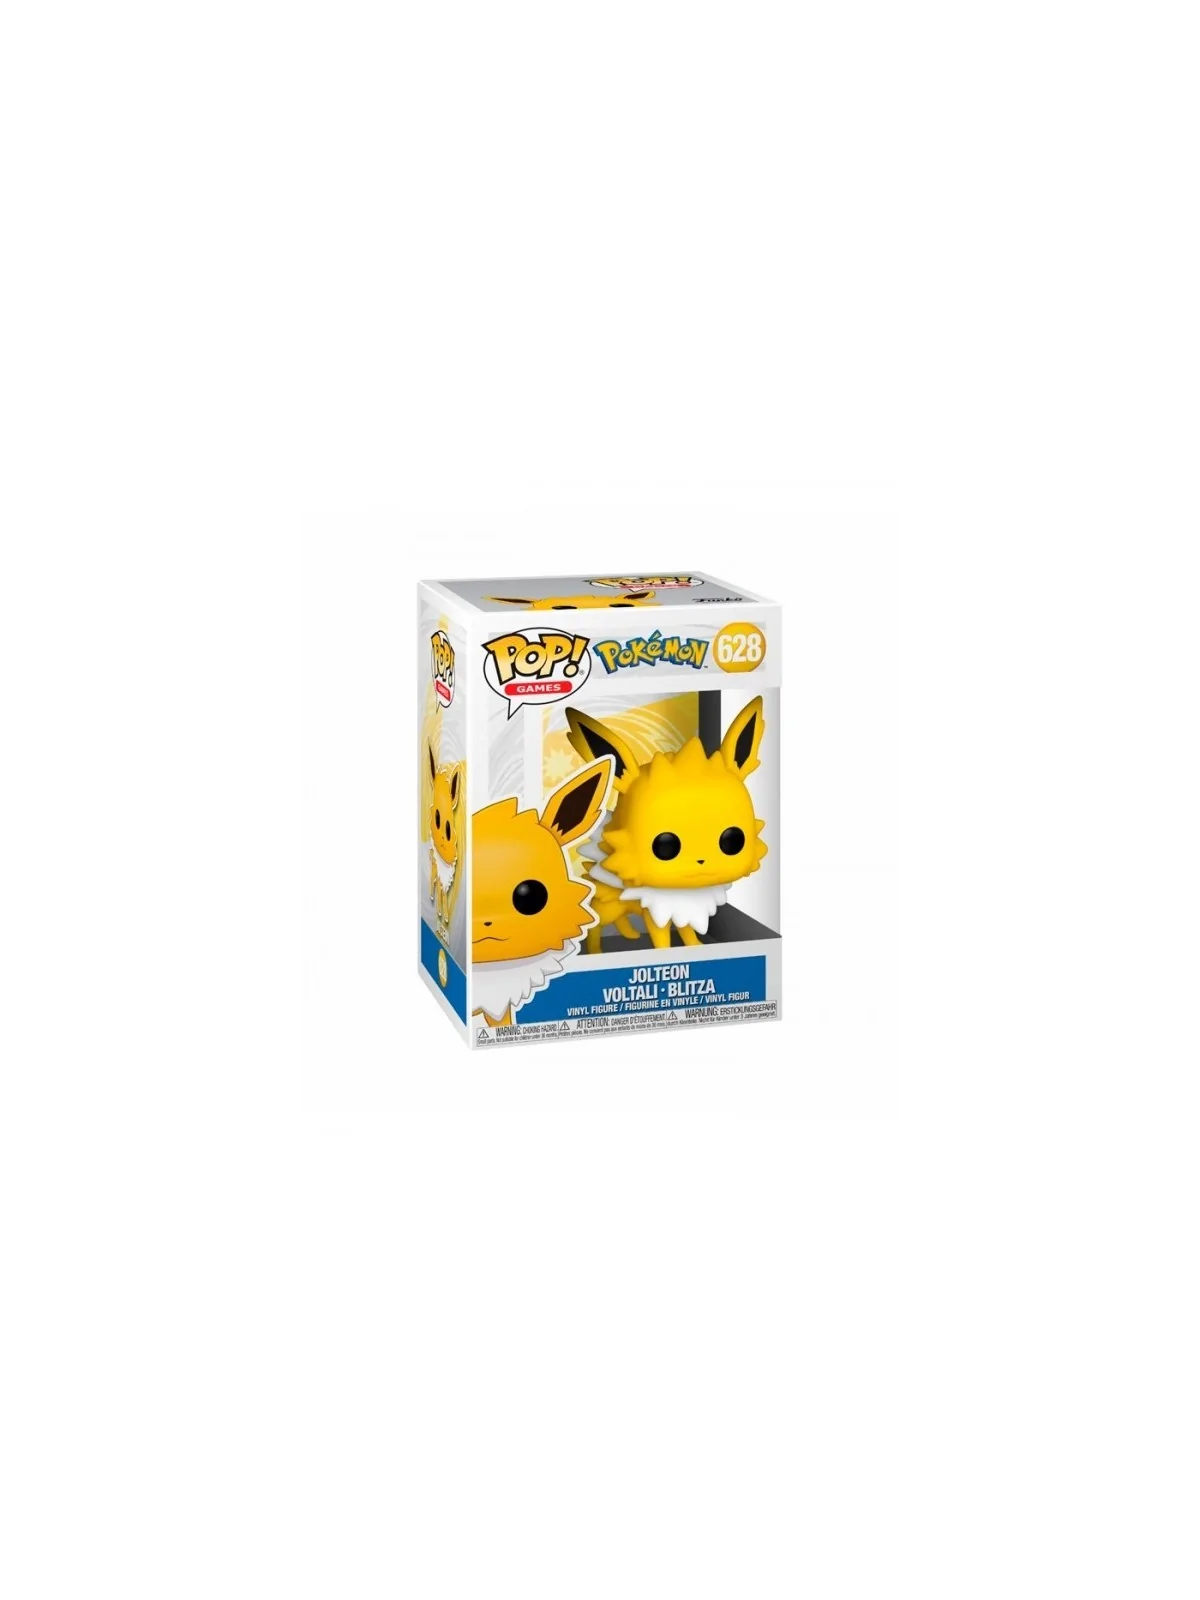 Comprar Funko POP! Jolteon Pokémon (628) barato al mejor precio 17,00 